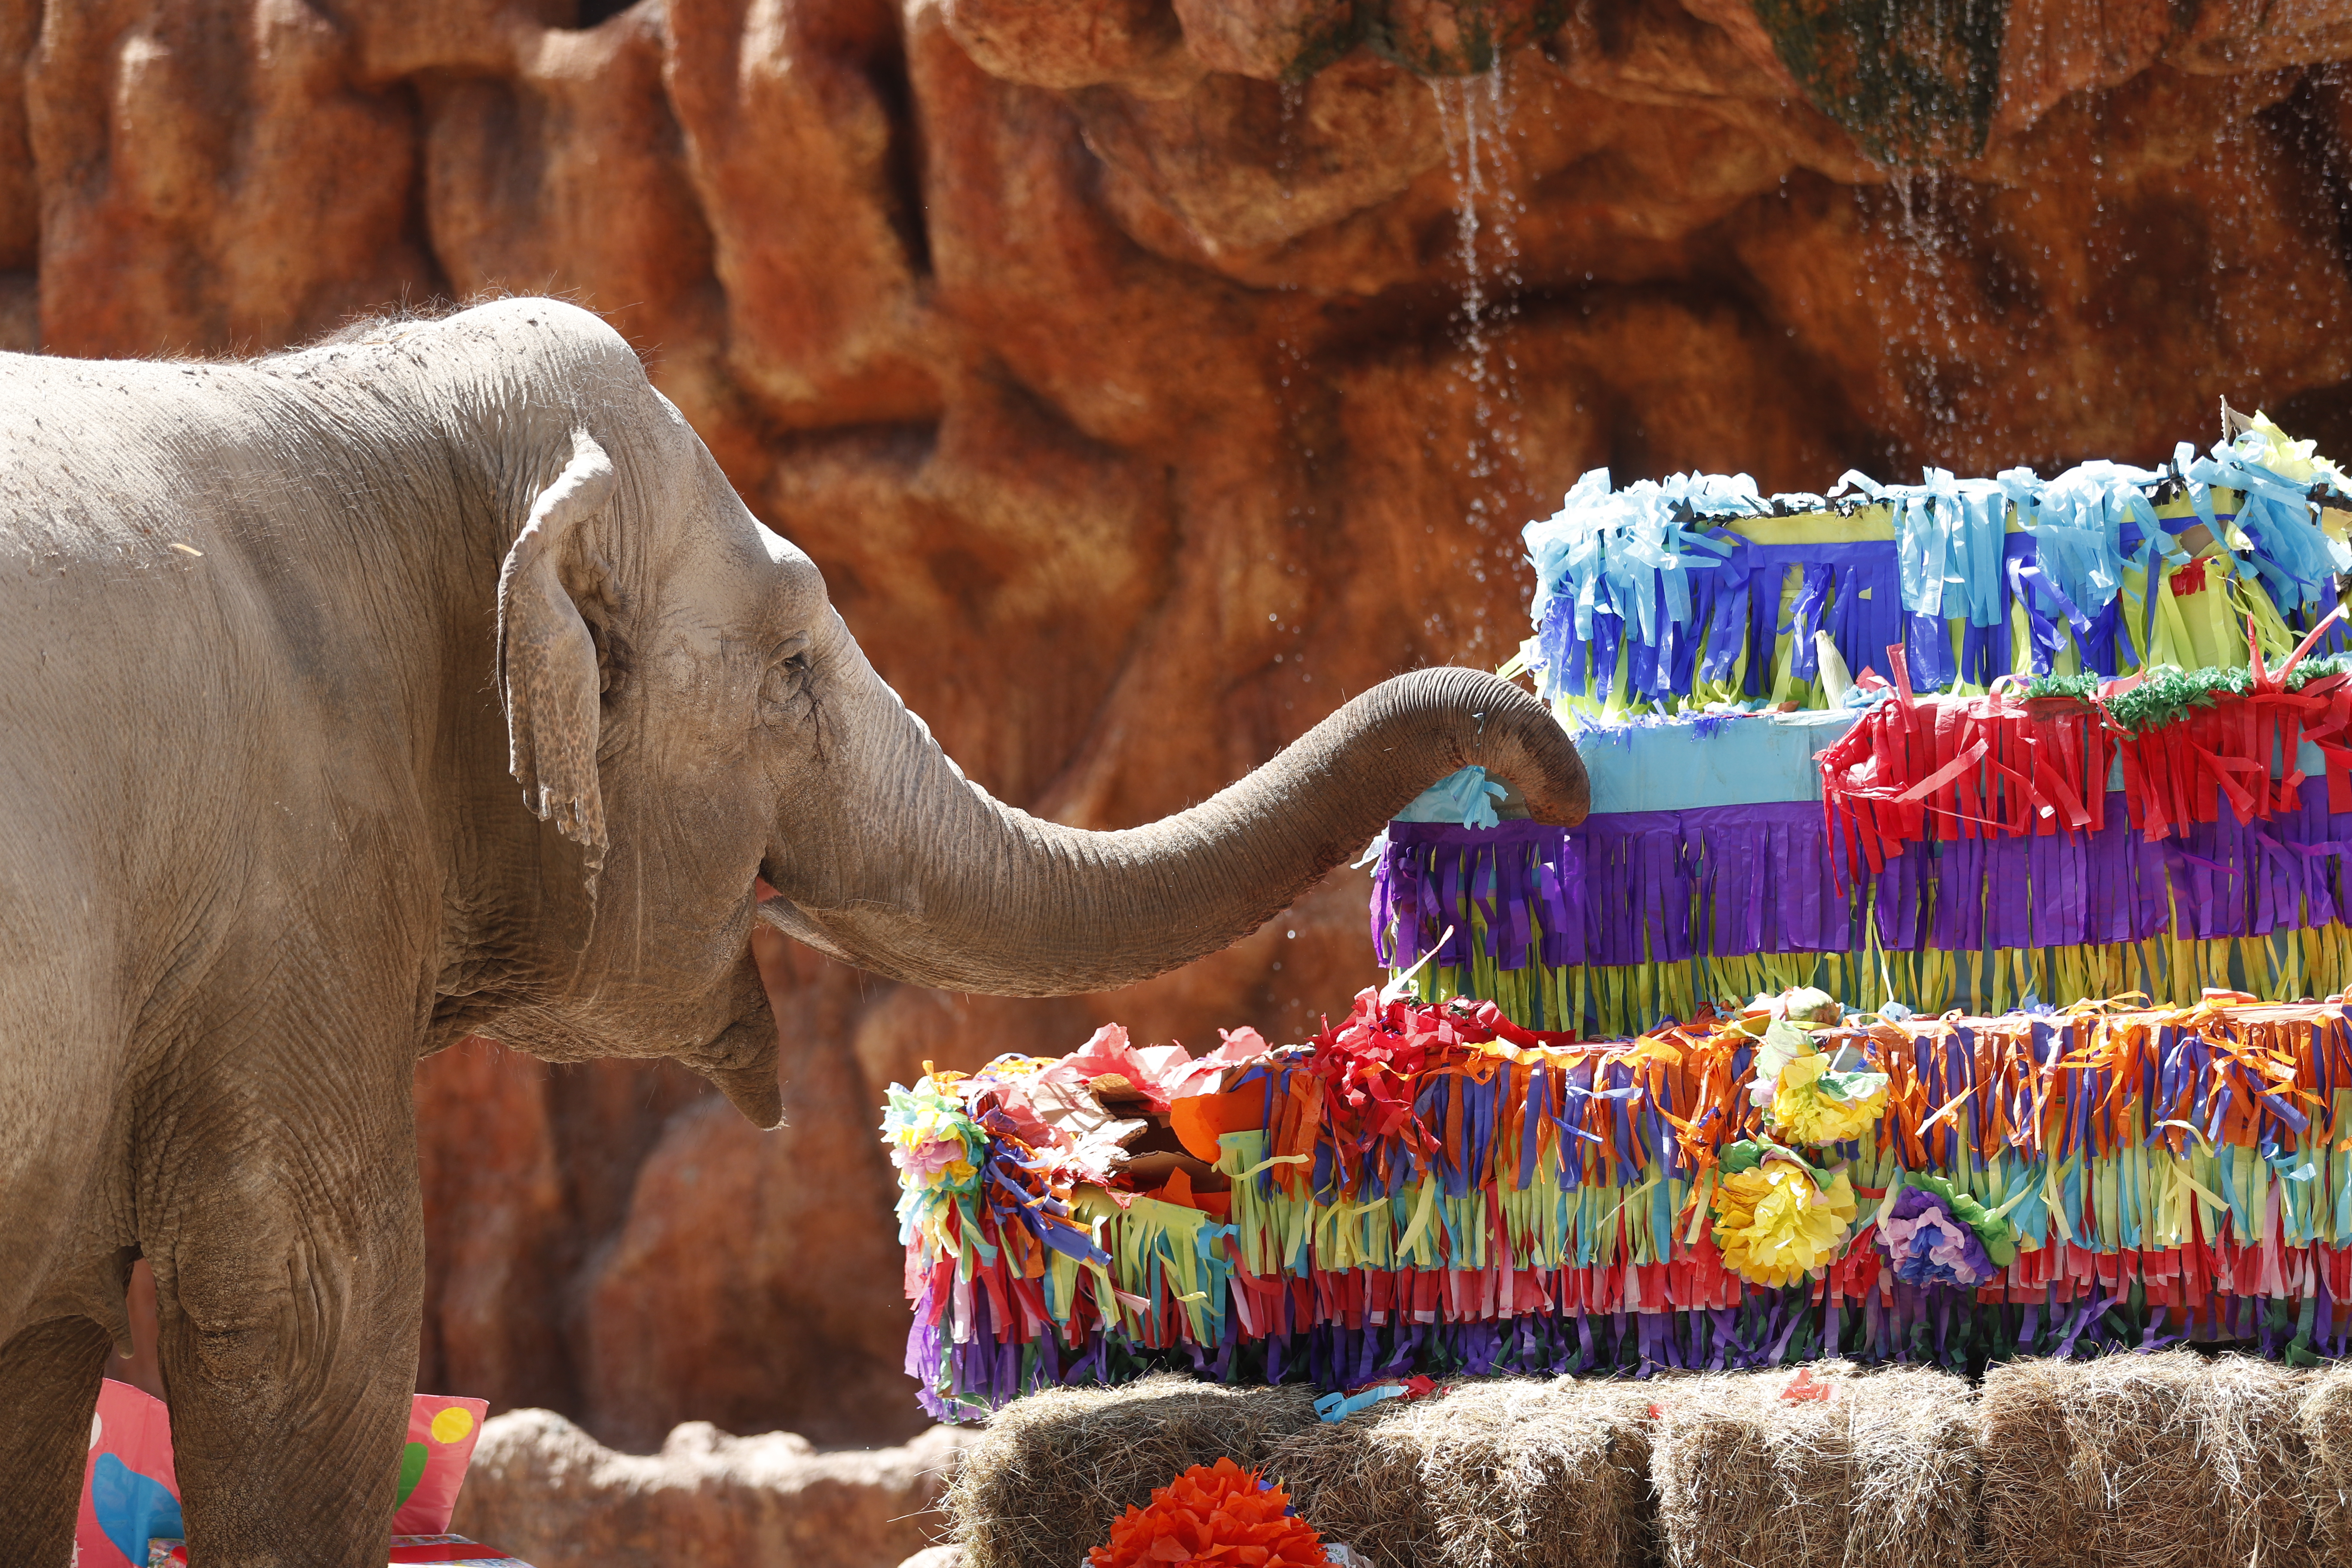 Para la elefanta este es un momento especial porque recibe regalos y un pastel gigante, el cual degusta ante los ojos de niños y adultos. Fotografía Esbin Garcia/Prensa Libre